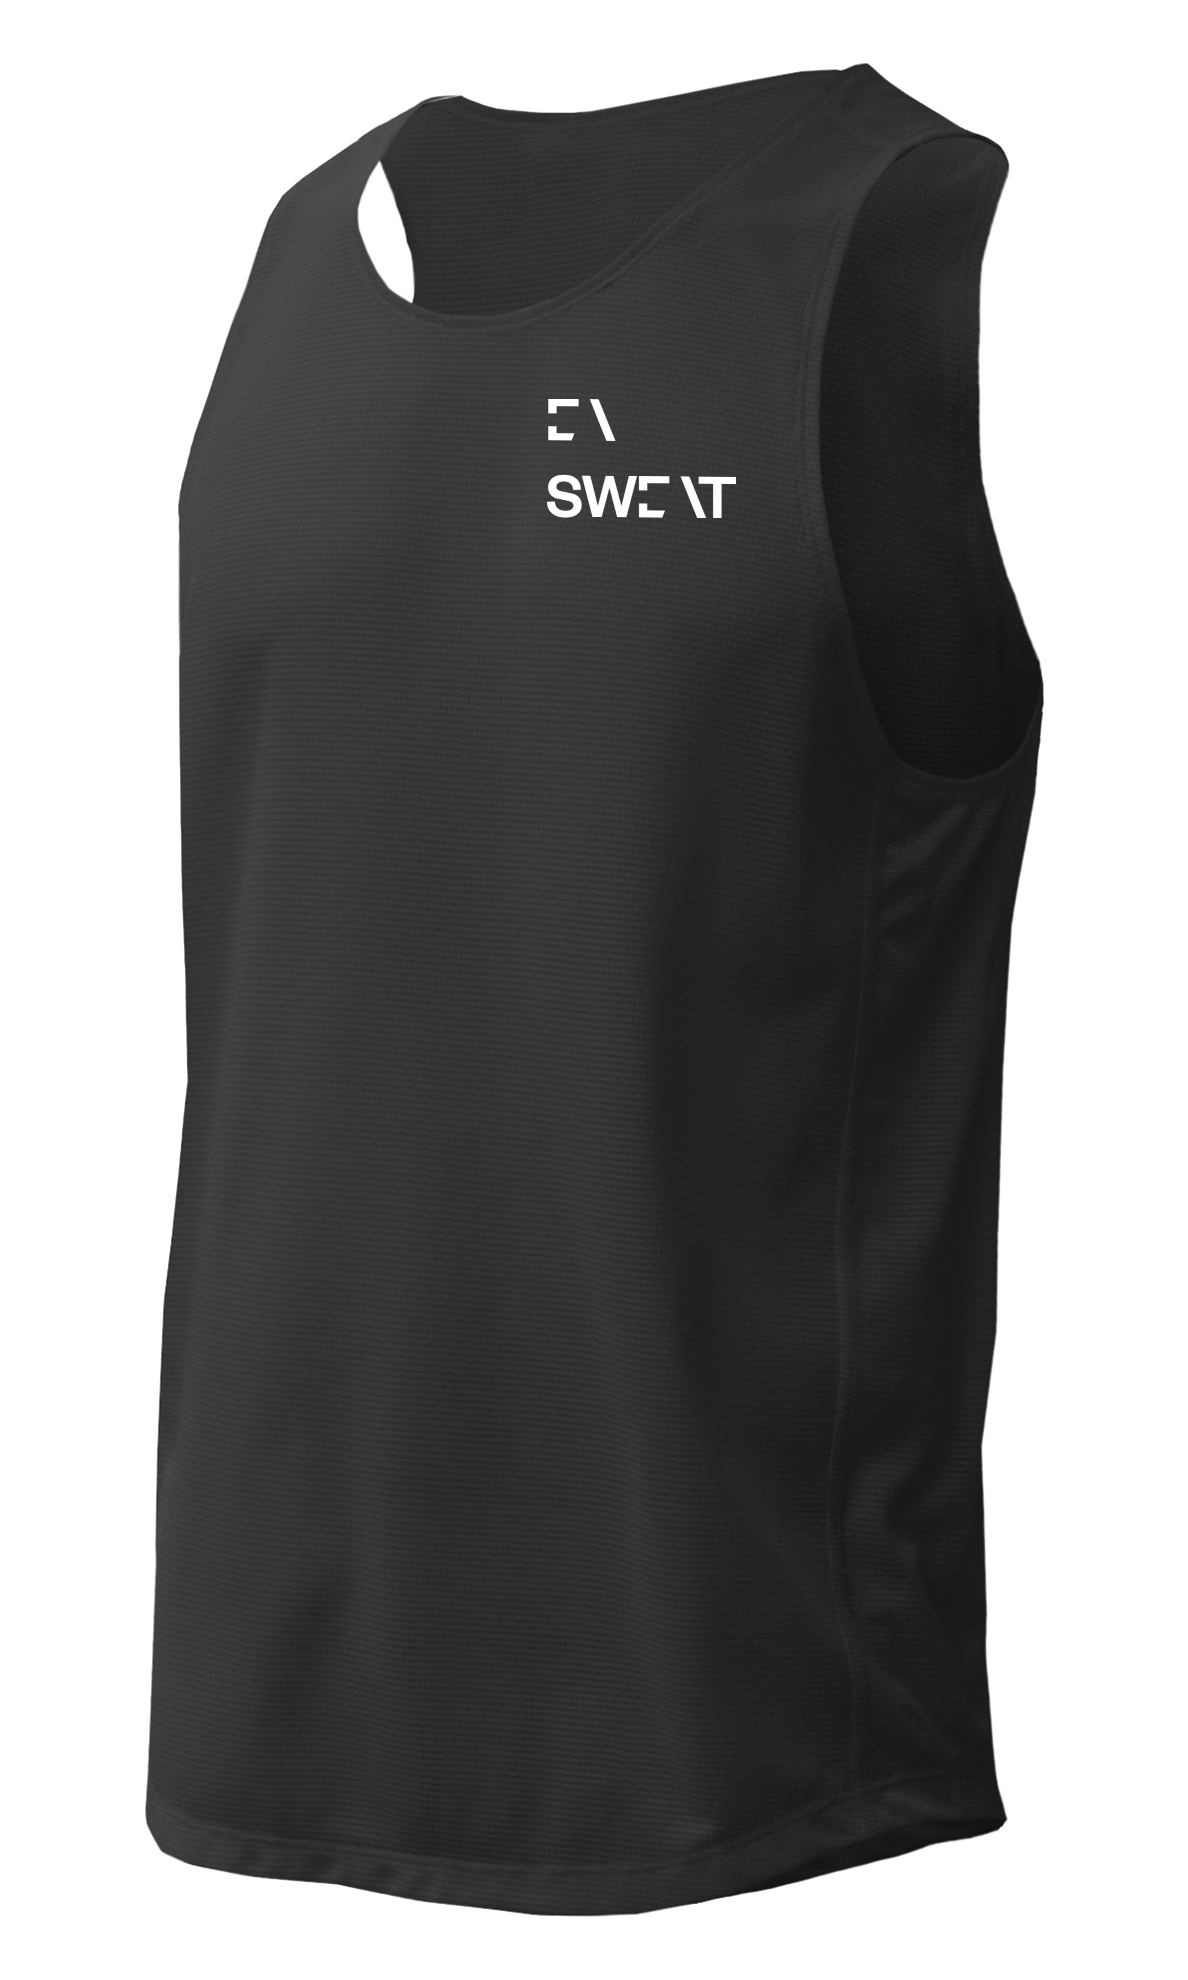 BAW Athletic Wear GS820 - Men's Grid Singlet